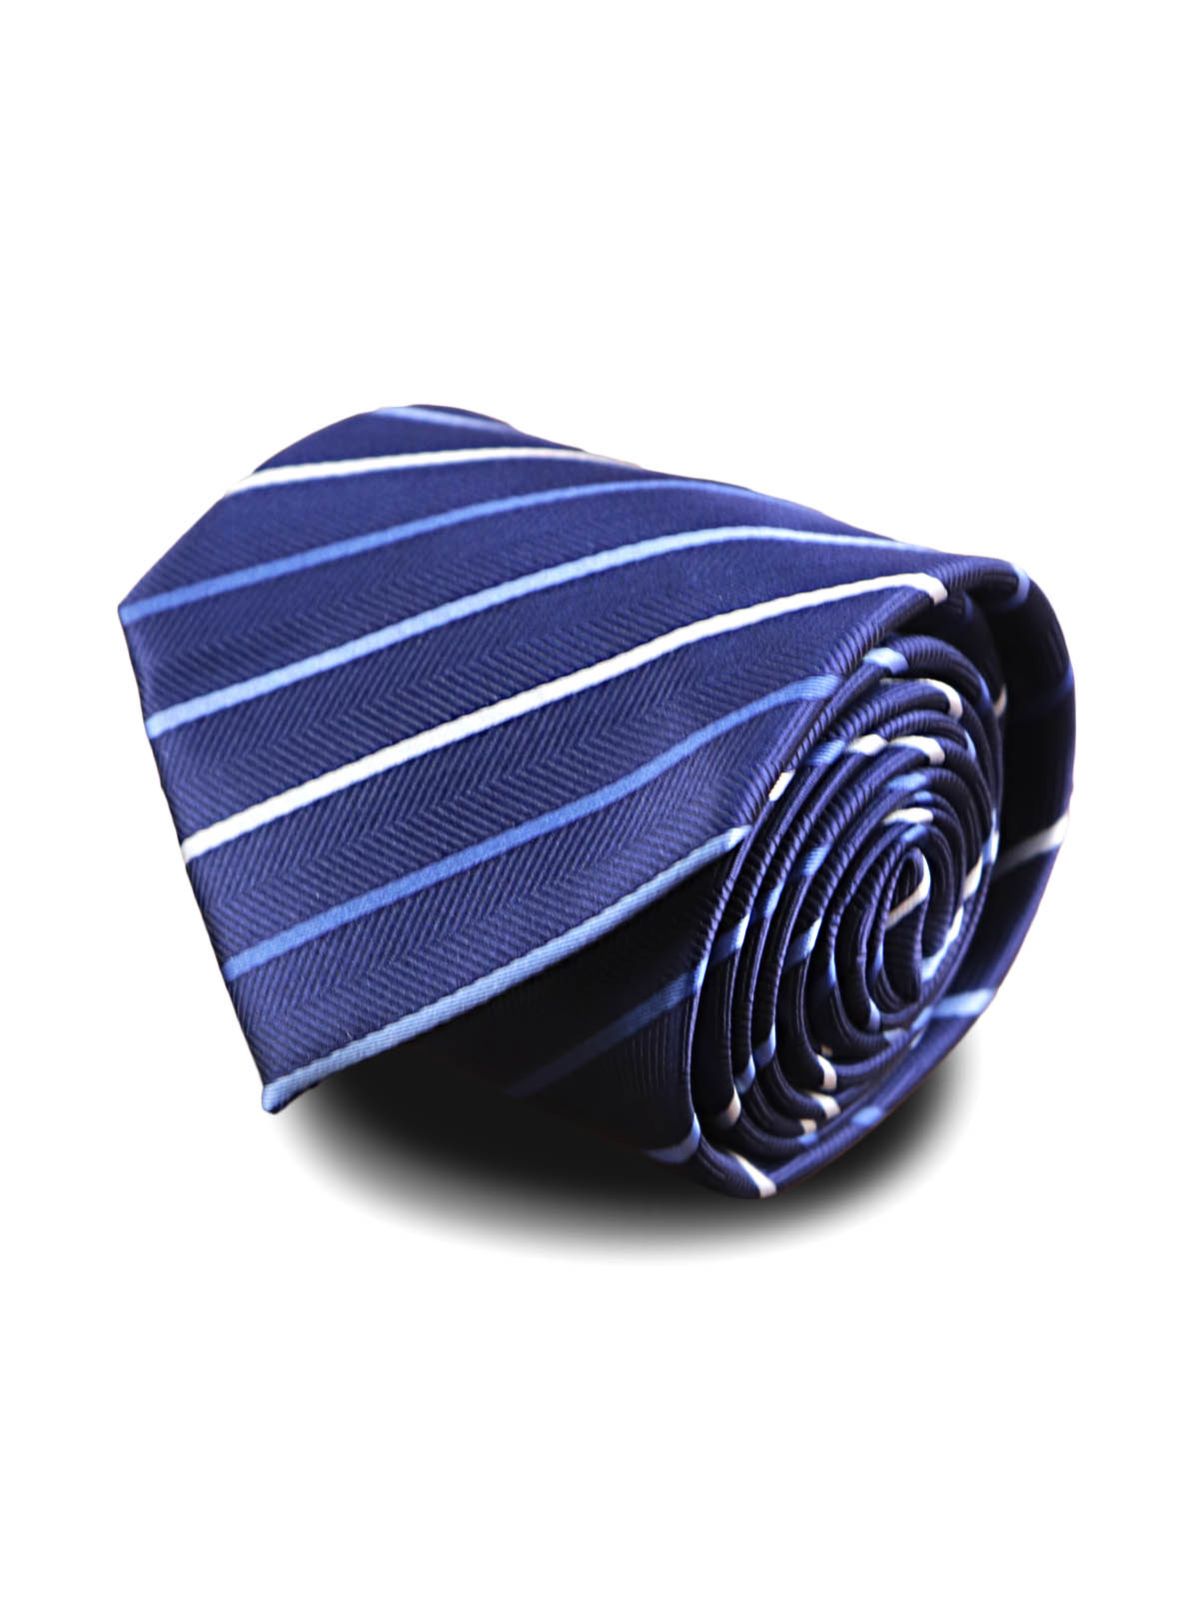 Галстук темно-синий в косую голубую полоску описание: Фасон - Широкий галстук, Материал - Полиэстер, Цвет - Темно-синий, Размер - 7.5 см х 140 см, Страна производства - Китай.